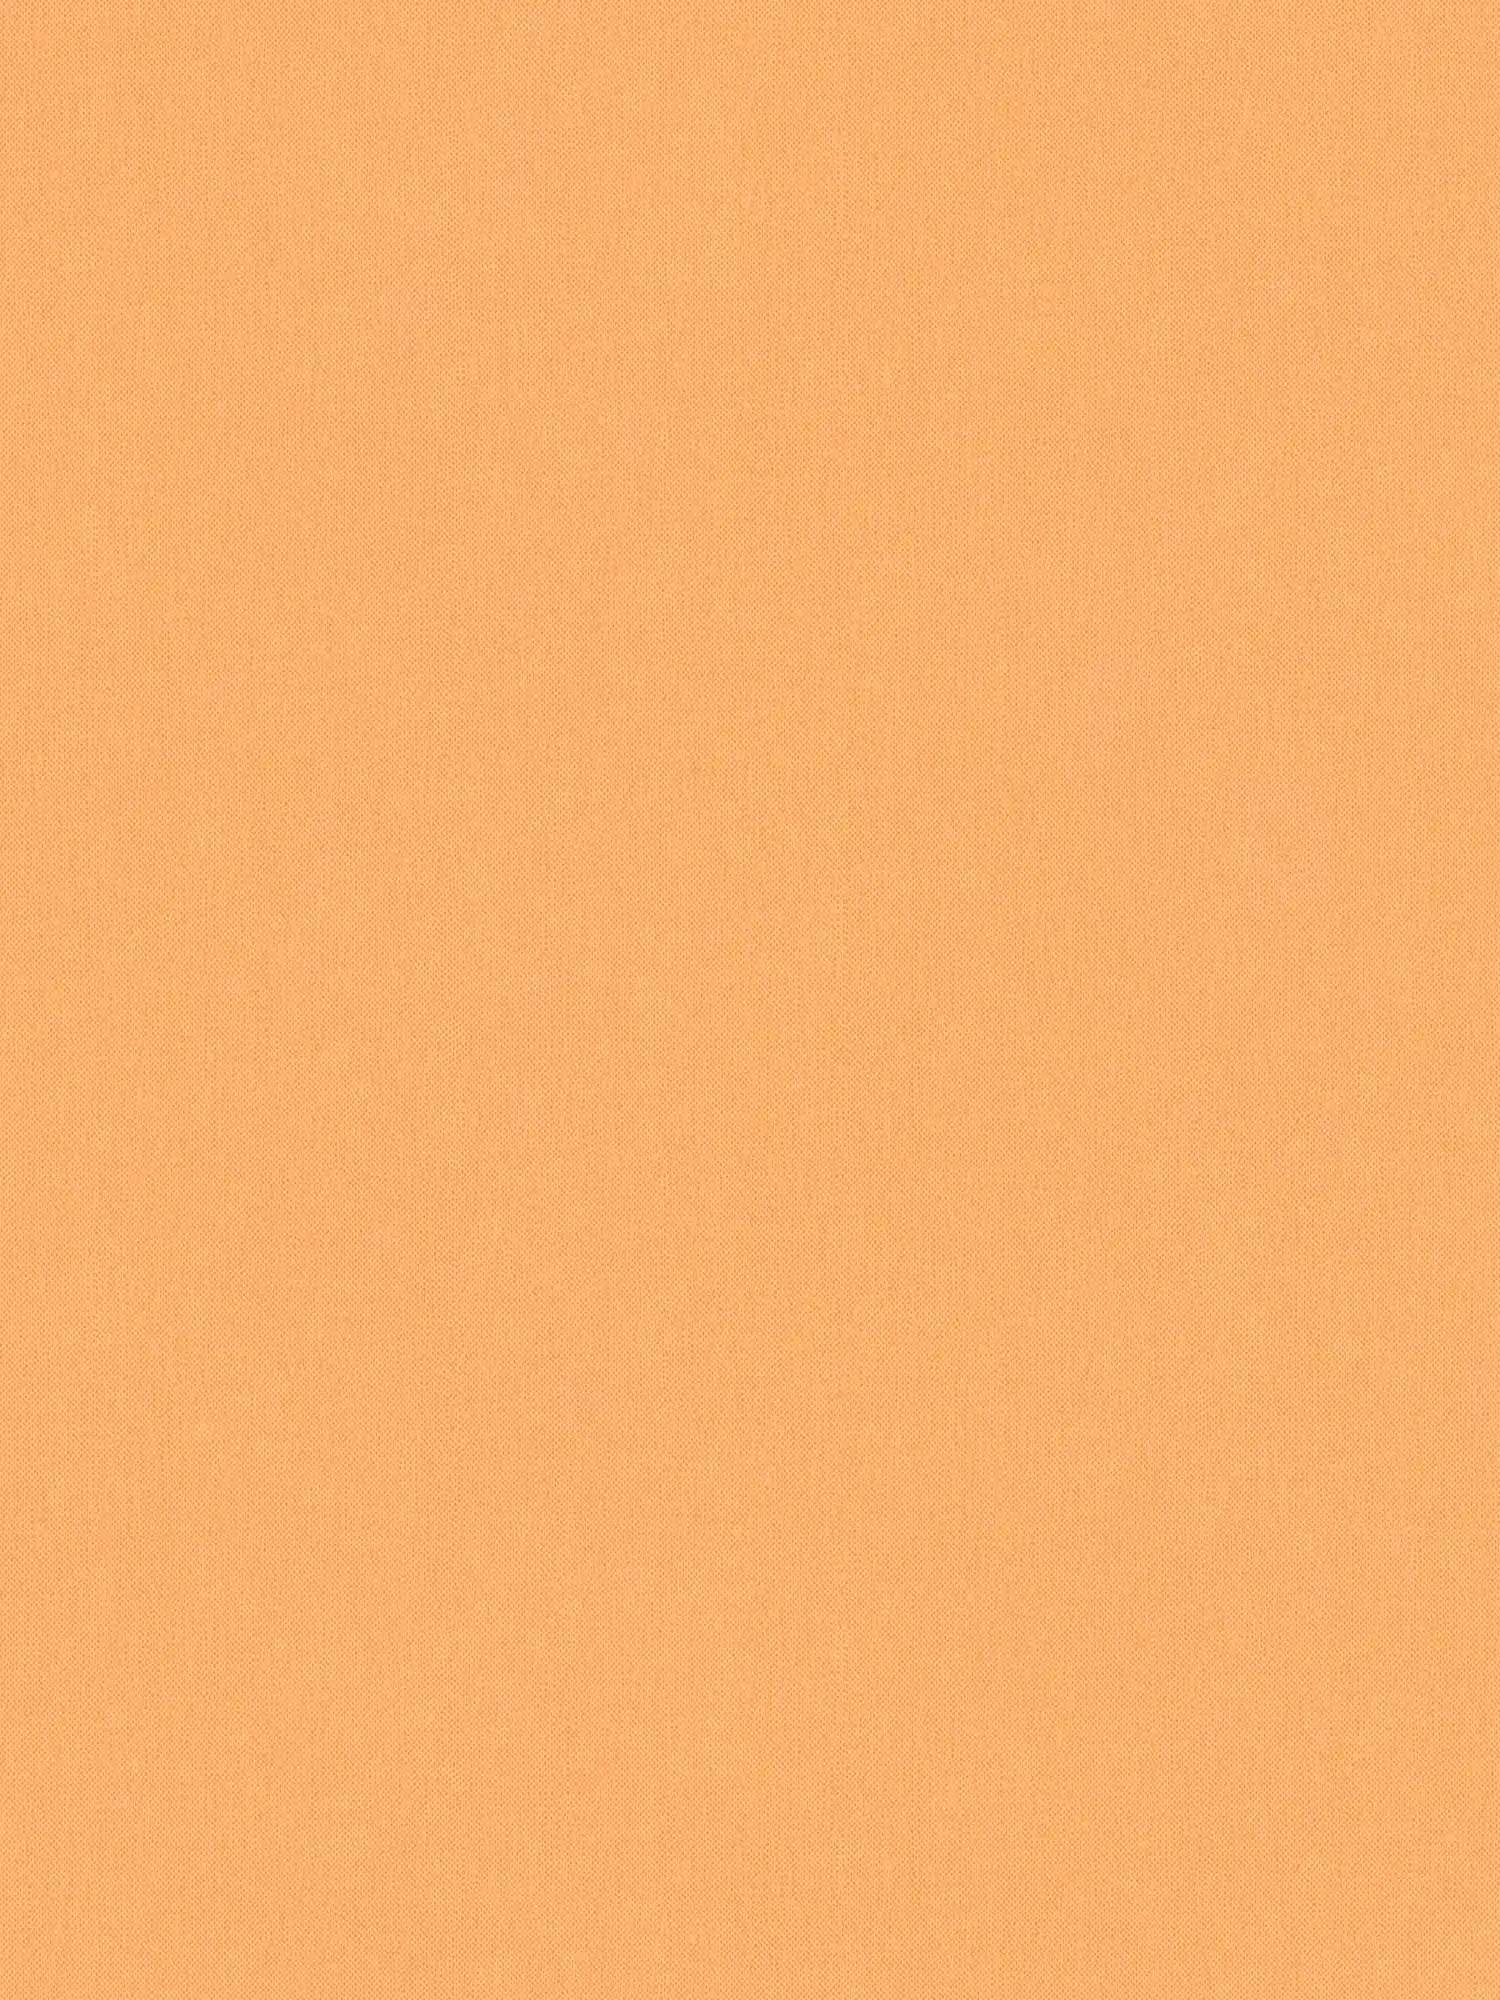 Carta da parati arancione pastello e opaca con struttura effetto lino - arancione
